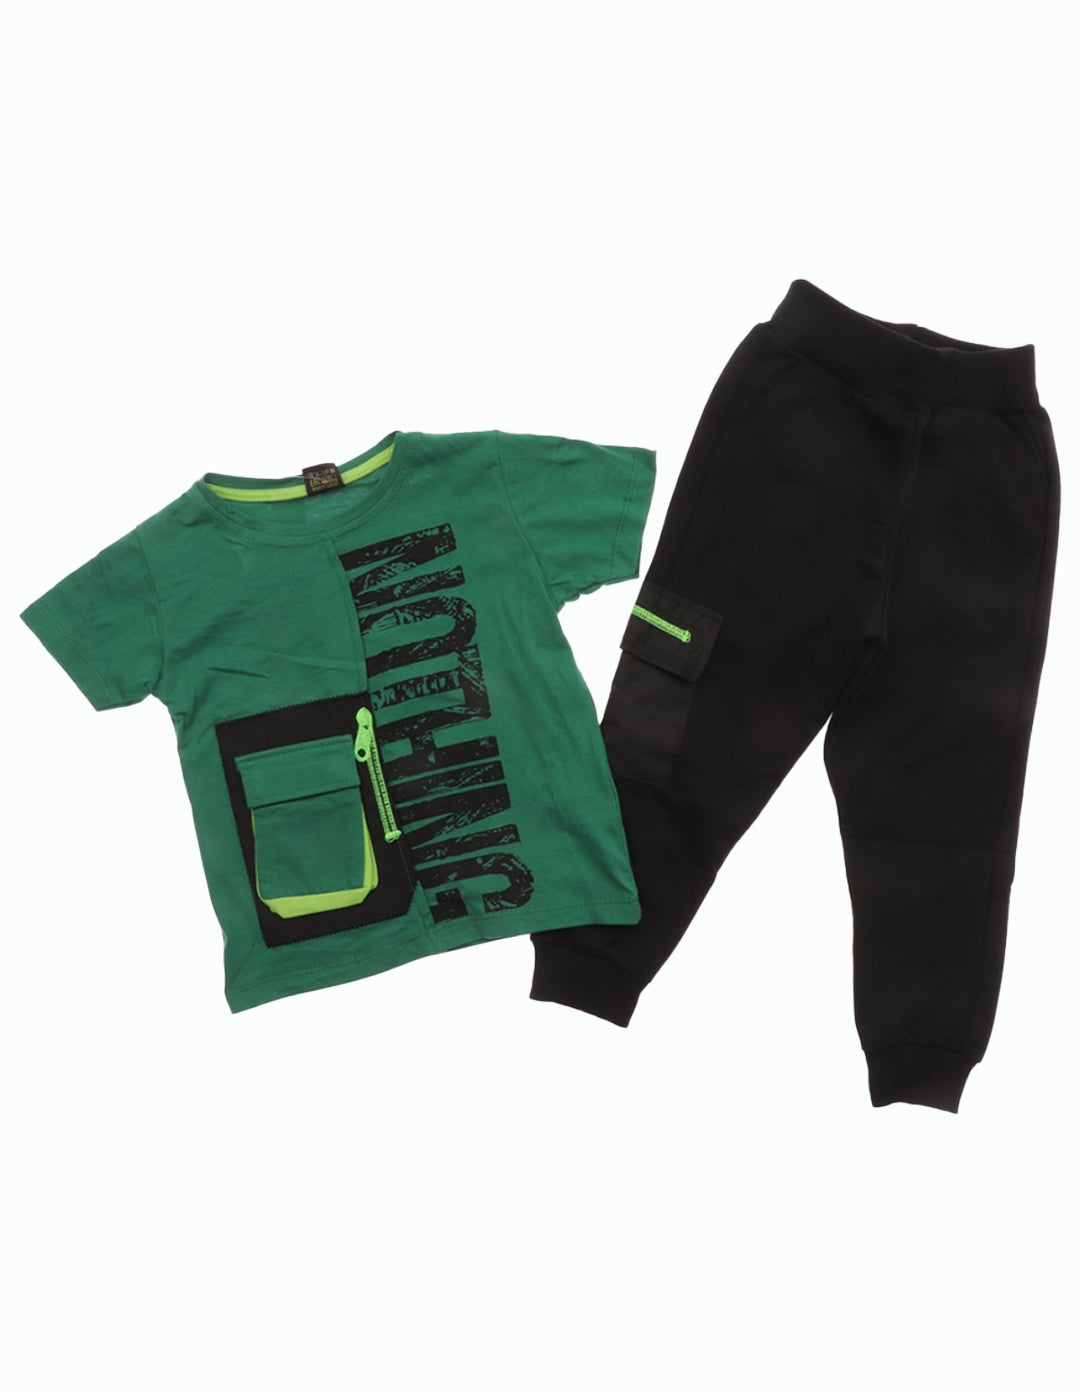 Conjunto de chándal niño, camiseta manga y pantalón largo verde – Pekeamorette